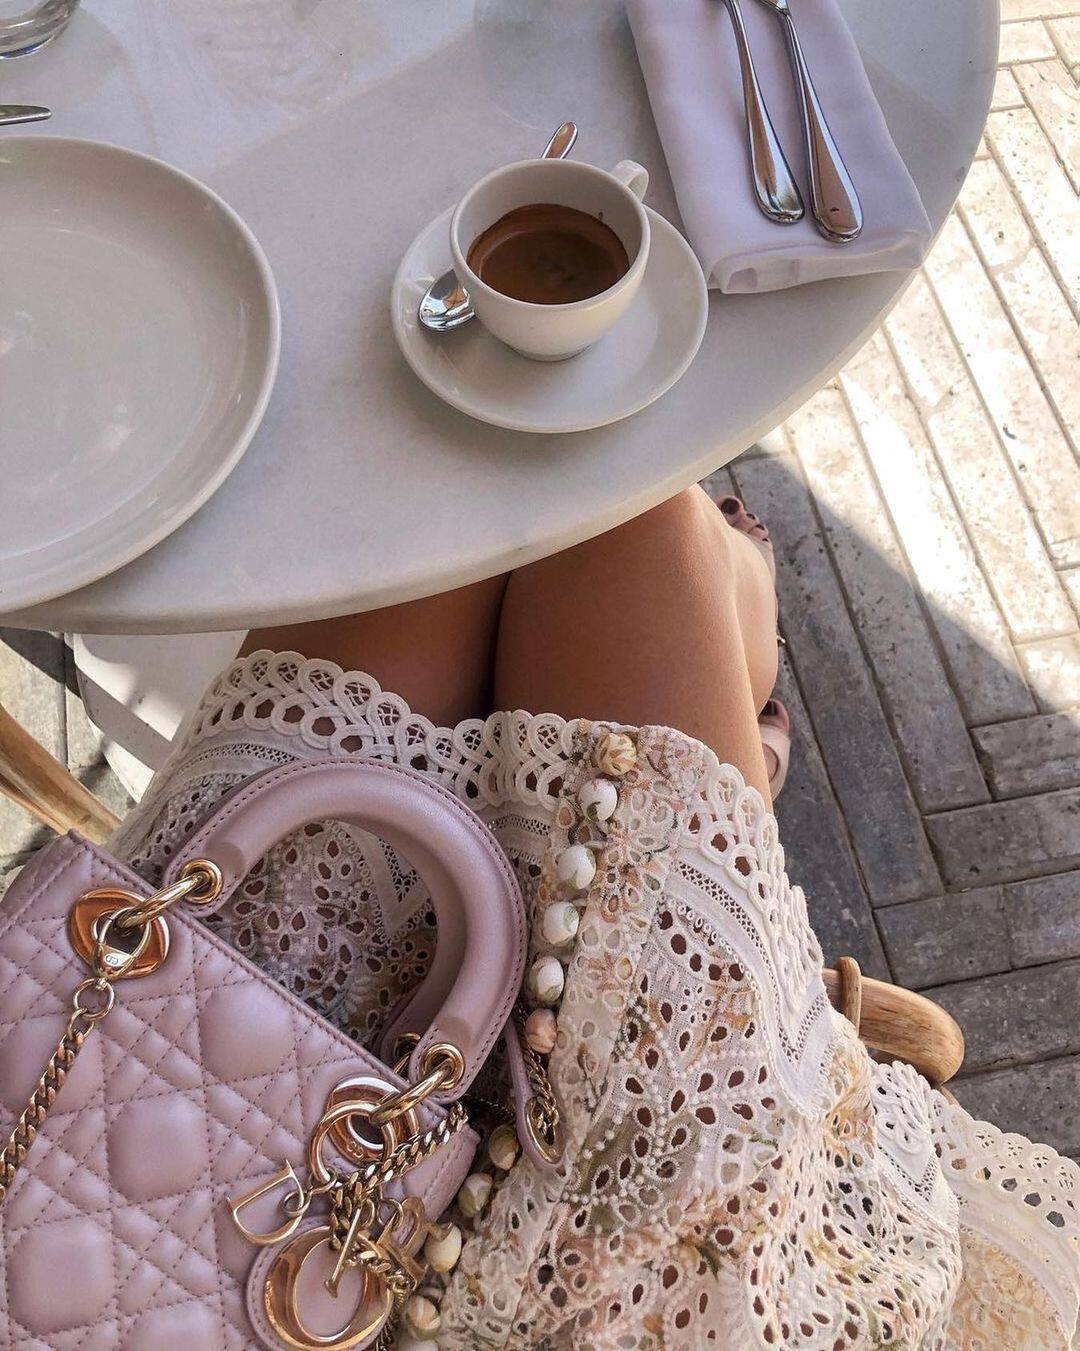 如果你去cafe有悉心打扮，當然不會滿足於只拍有咖啡的 #TableSituations ，適當地展現當天的 #ootd ，也是必需的。這個時候，你要取捨桌面位置，最理想效果是構圖上半部分是咖啡，下半部分是穿搭和手袋。